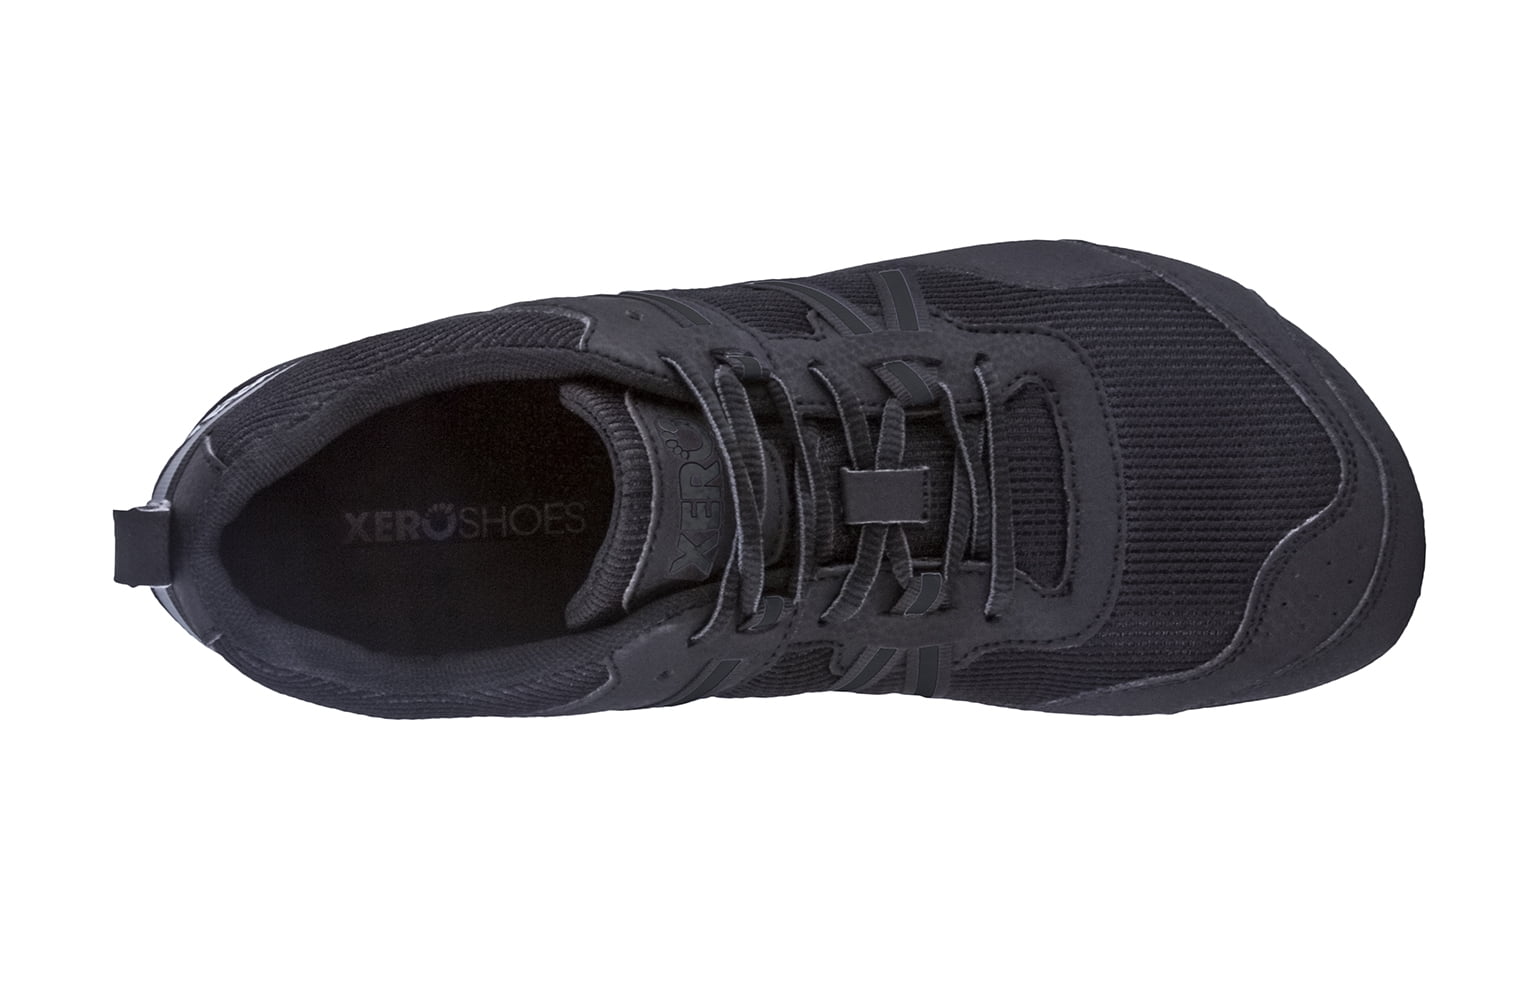 xero shoes prio black